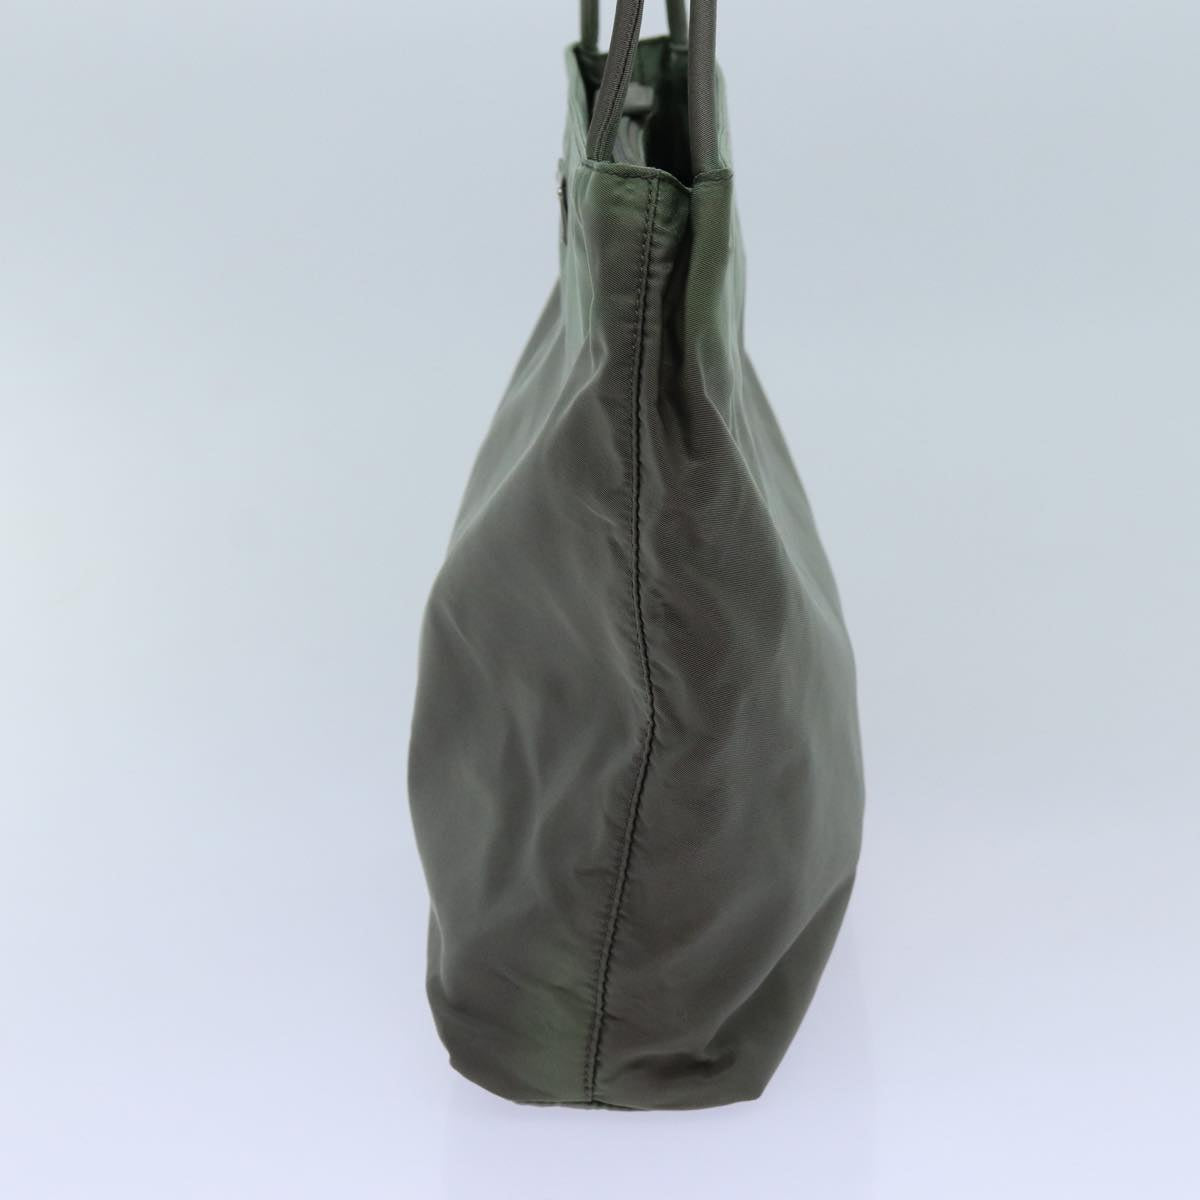 PRADA Hand Bag Nylon Khaki Auth hk1260